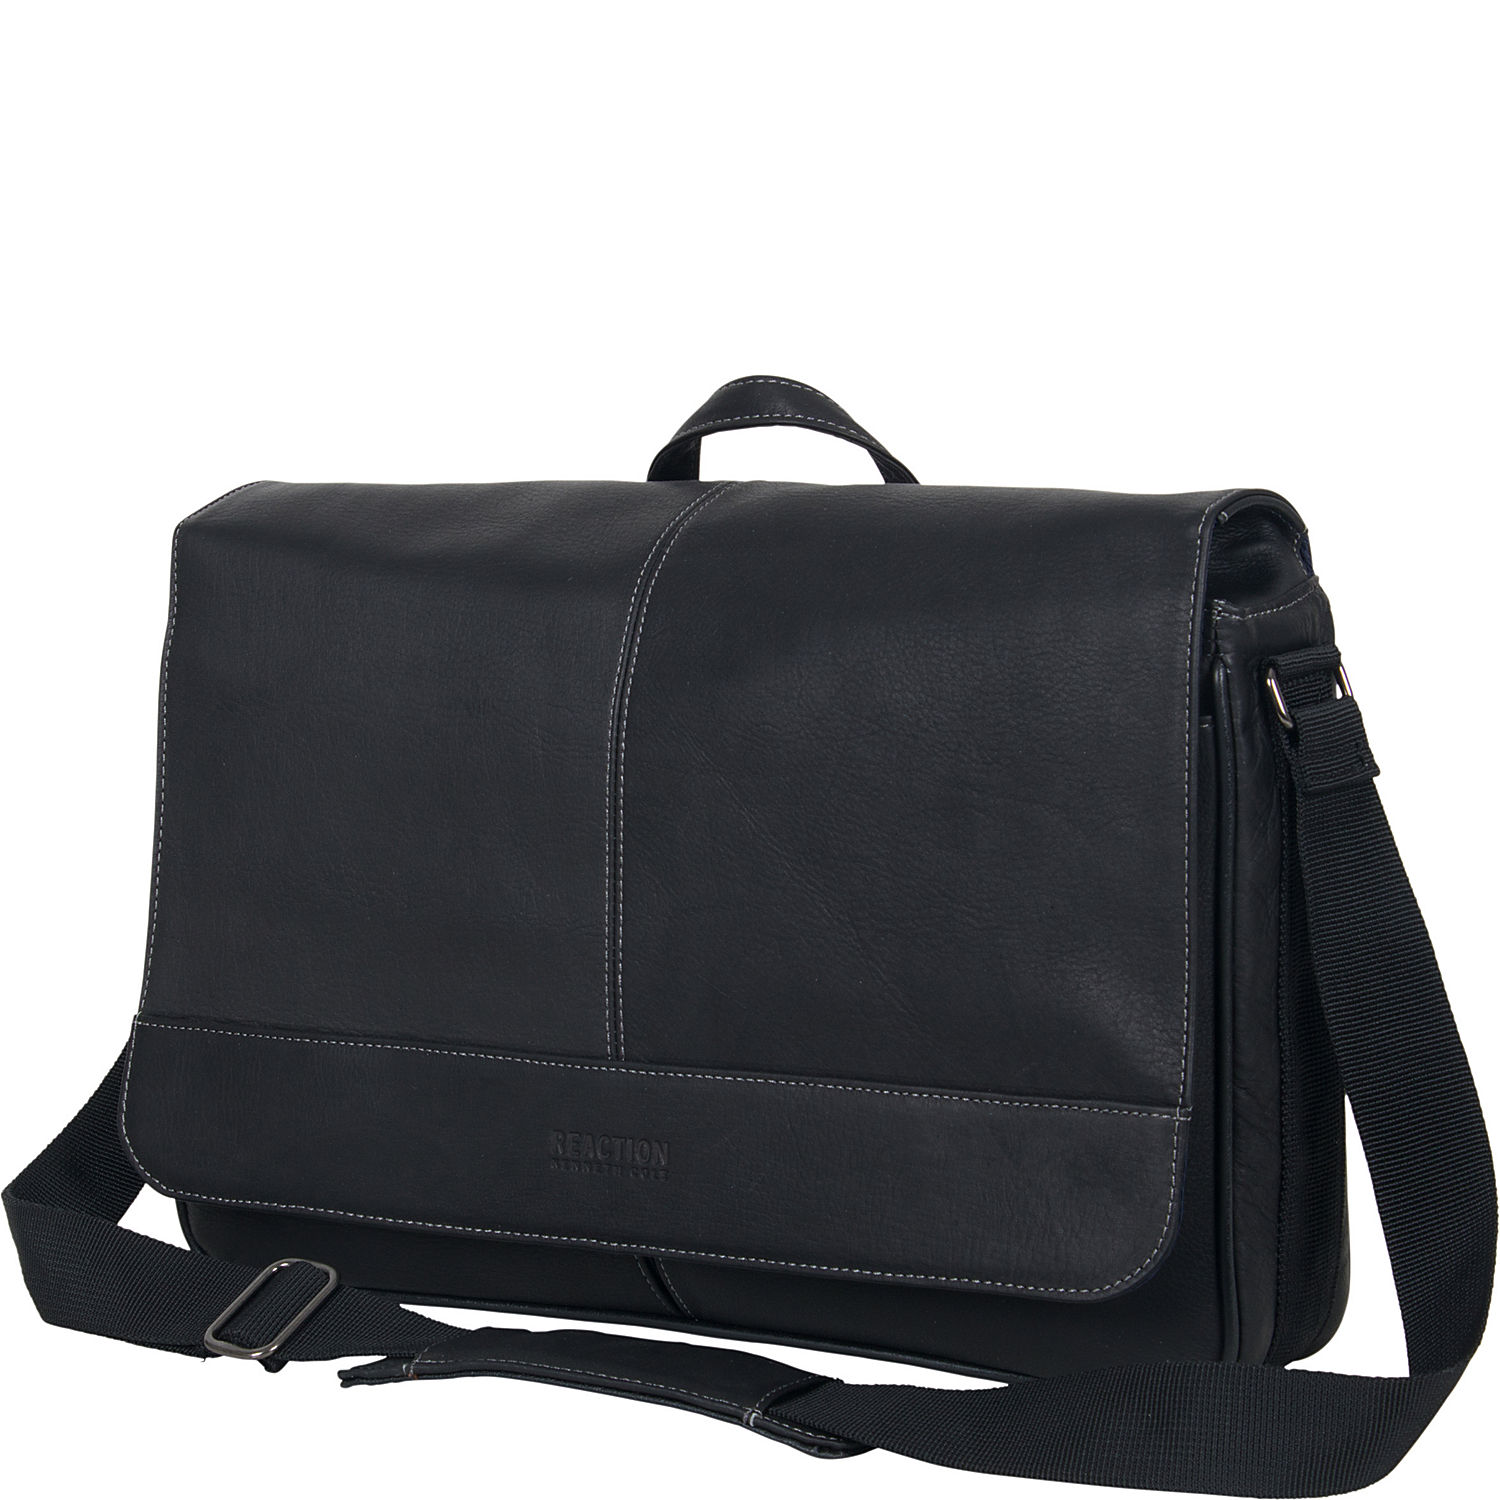 Best Over The Shoulder Computer Bag – Shoulder Travel Bag